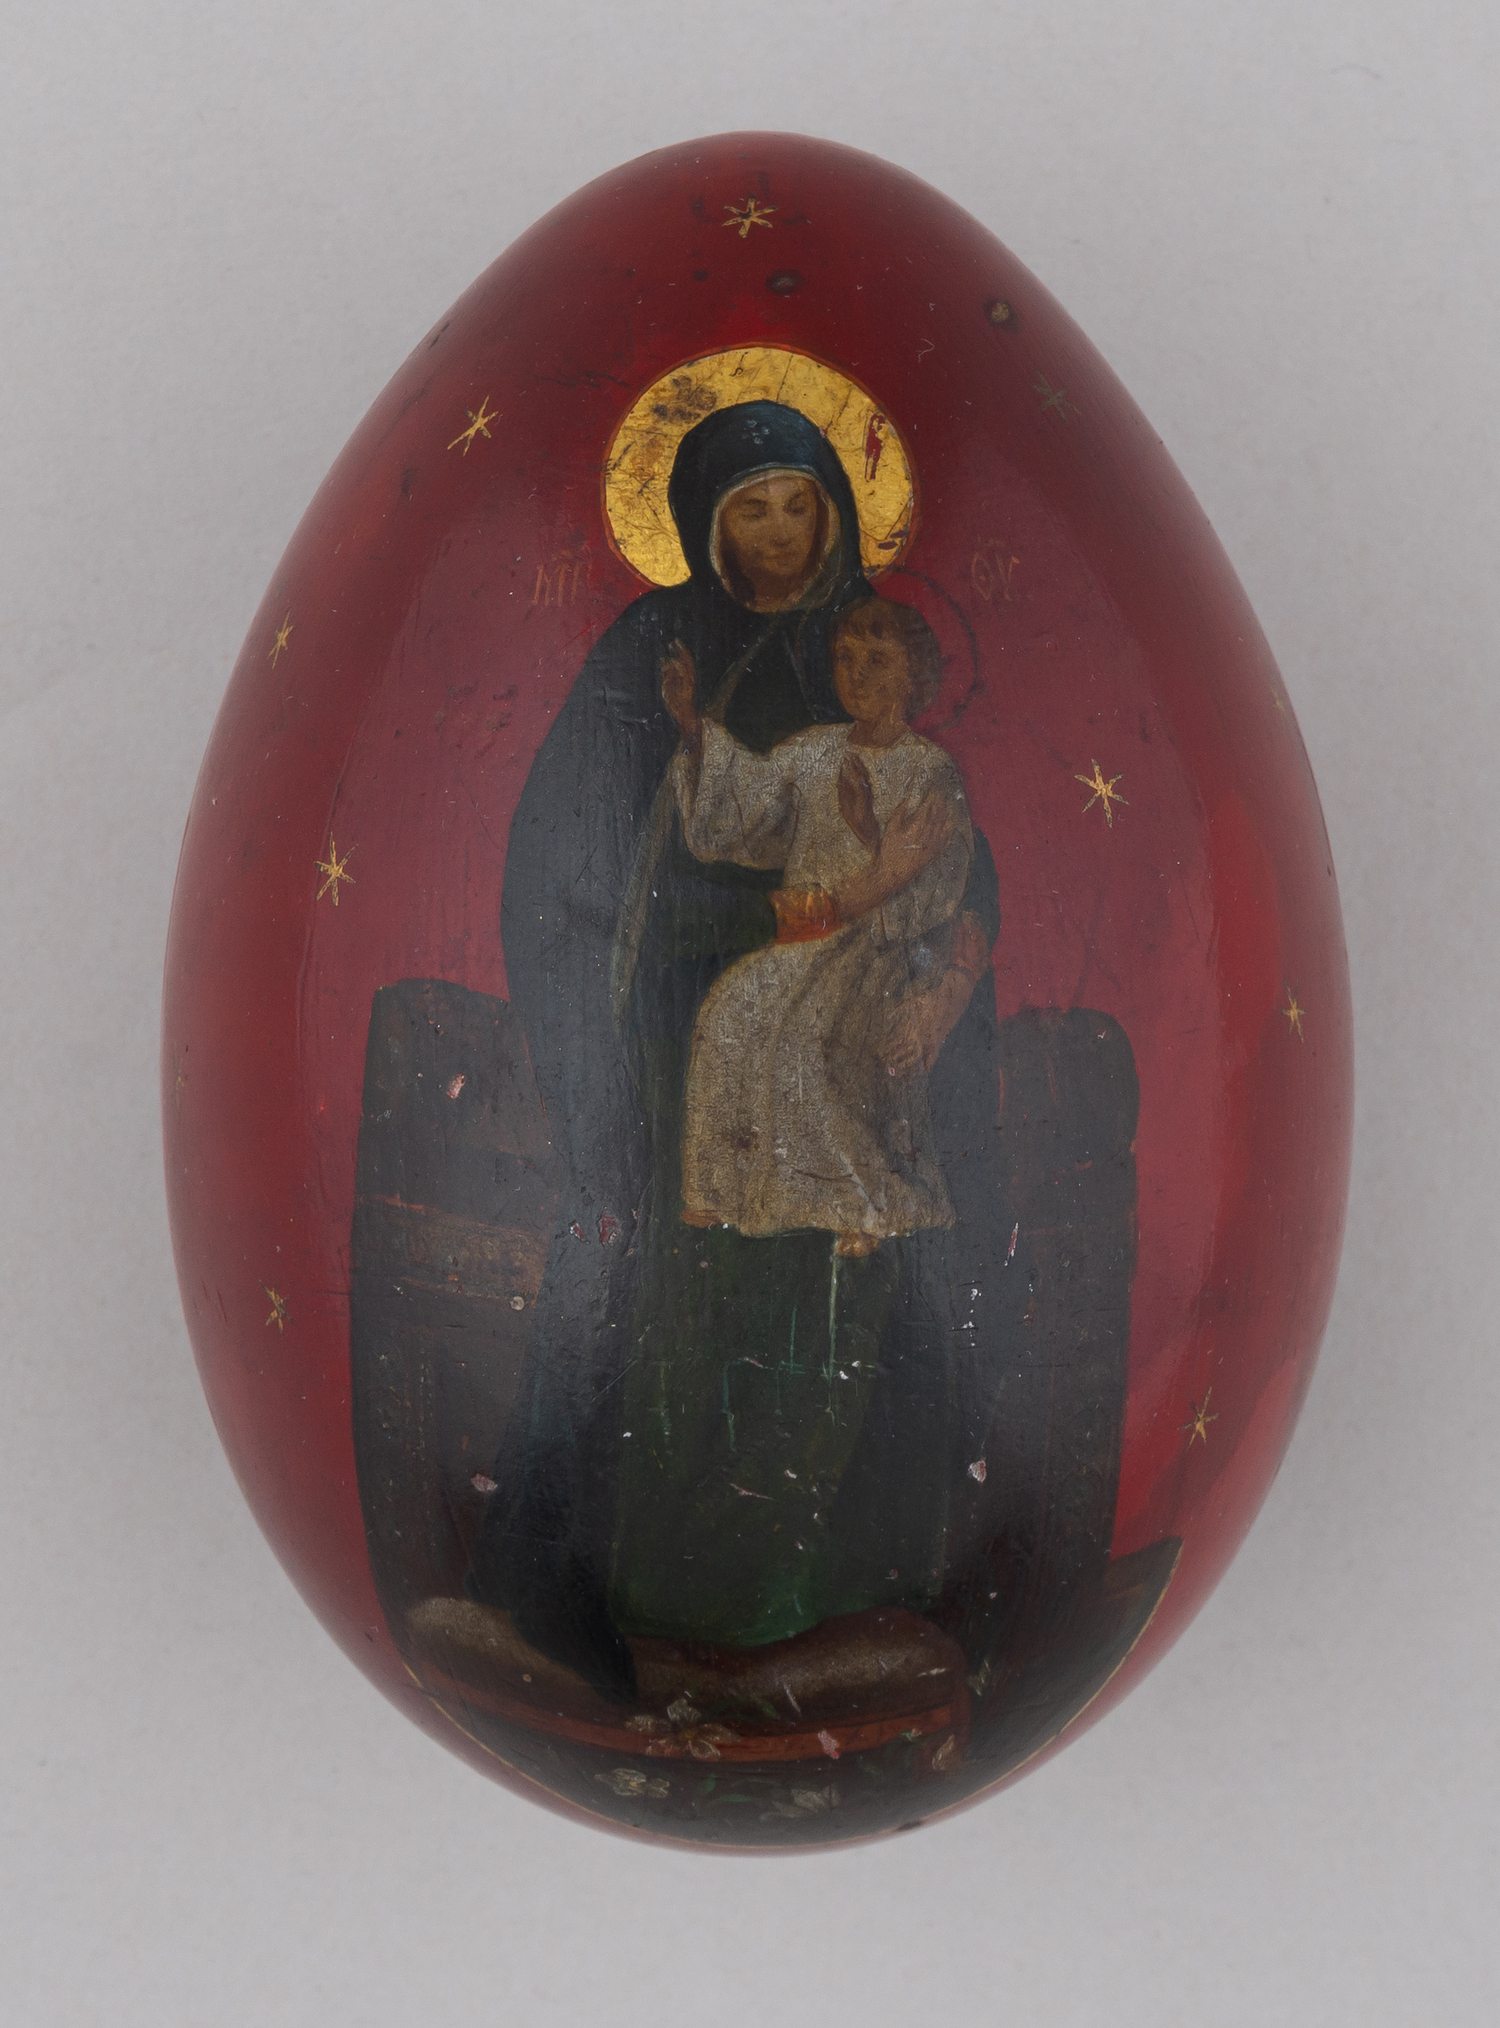 (Пасхальные дары. Лукутин) Пасхальное яйцо с изображением храмов московского Кремля и образом Богородицы.